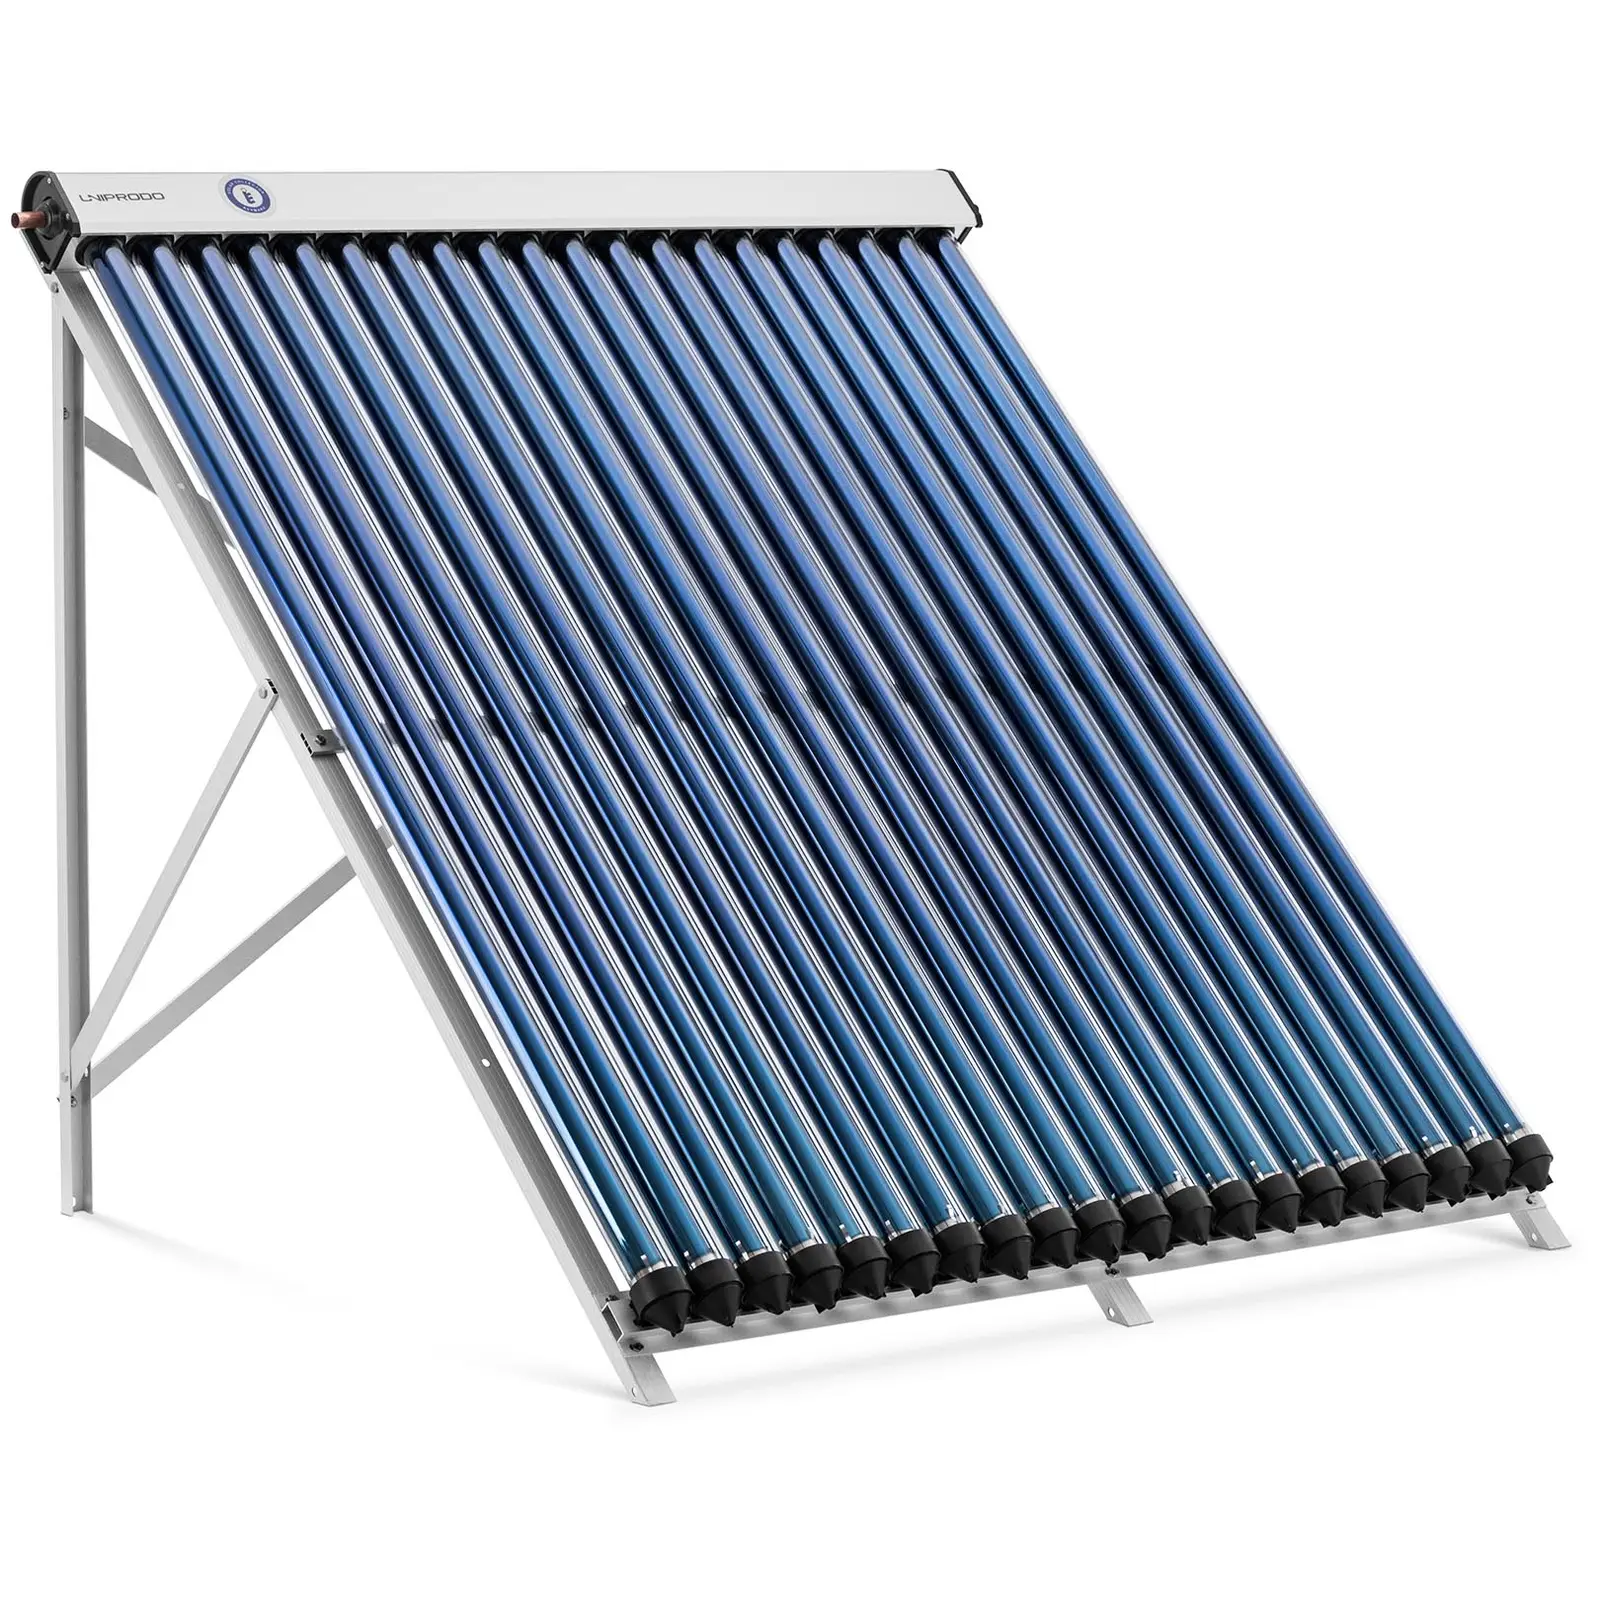 Rúrkový kolektor - solárna tepelná energia - 20 trubíc - {{max_capacity_2013_temp}} l - 1.6 m² - -45 – 90 °C